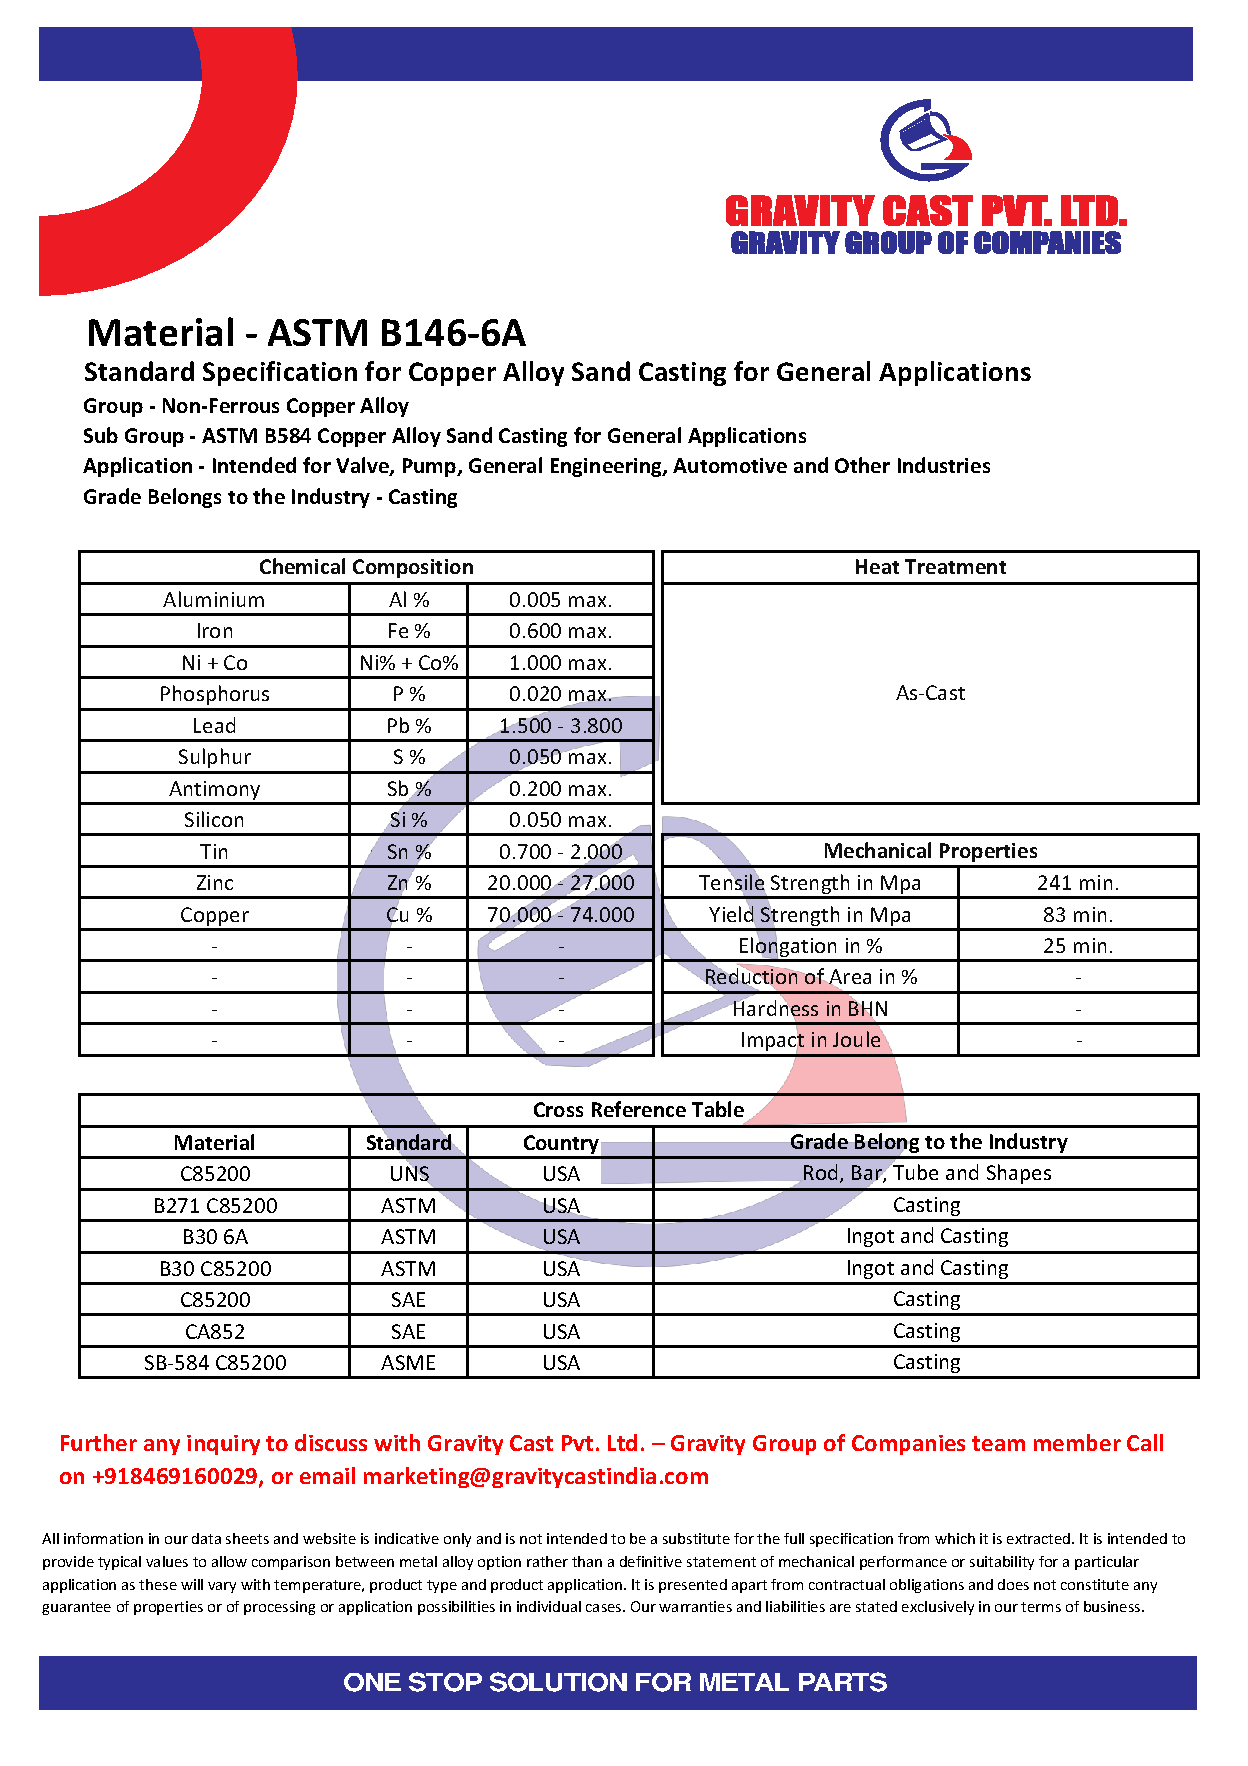 ASTM B146-6A.pdf